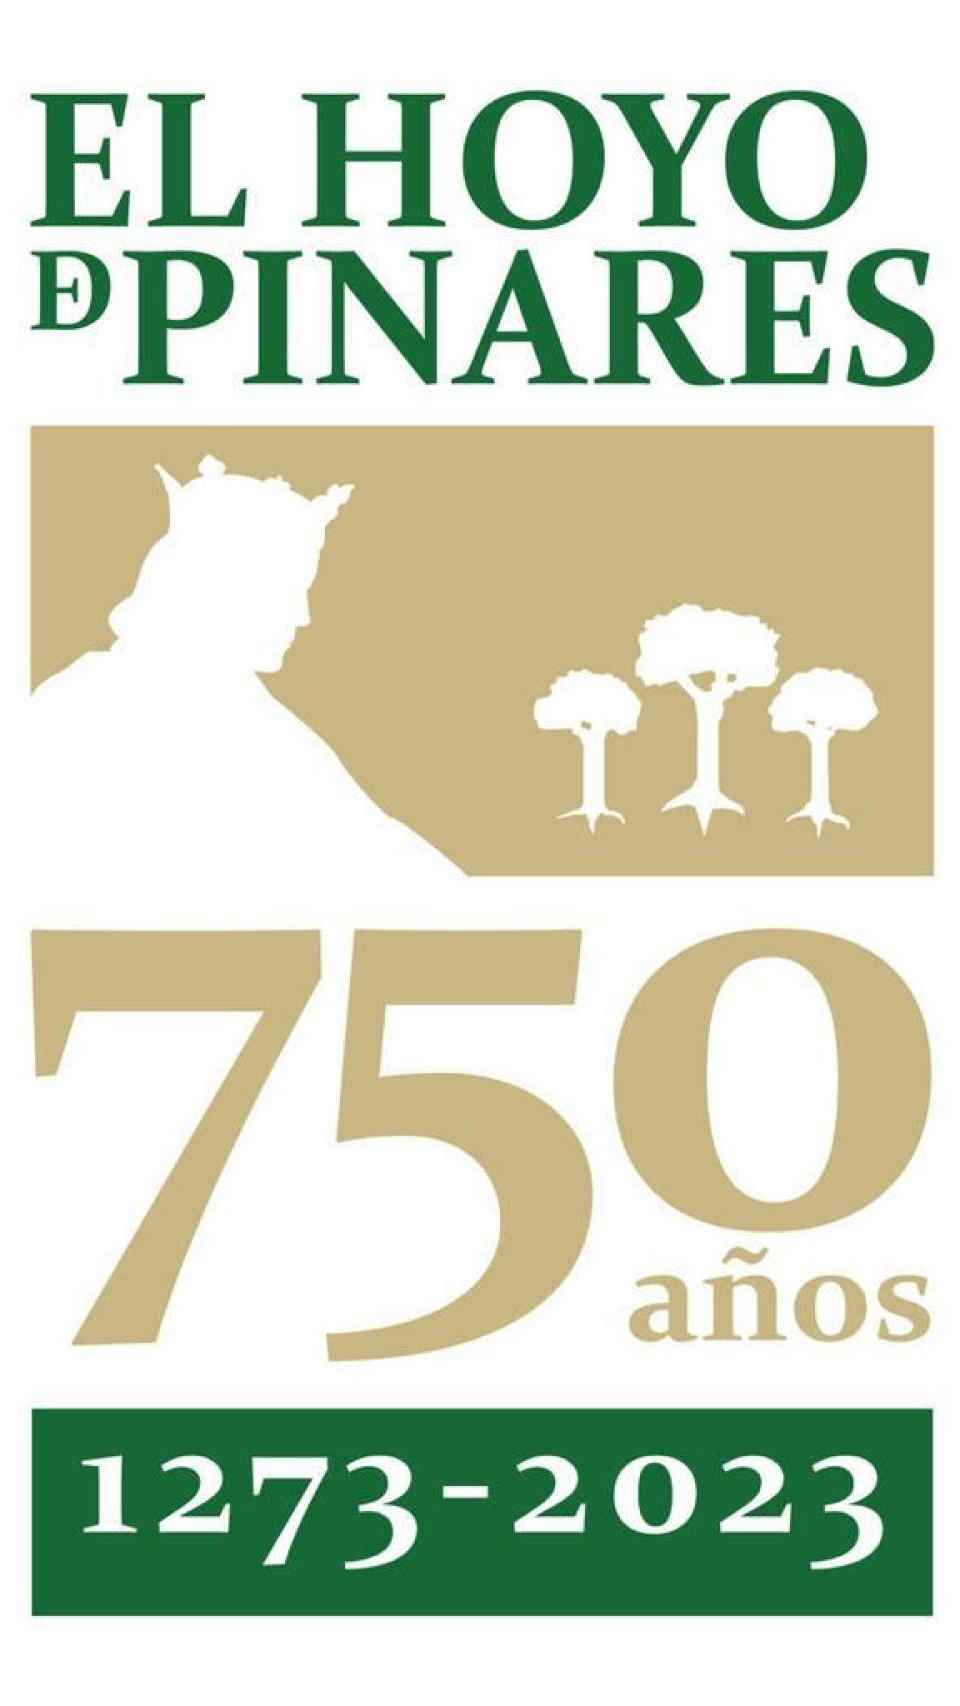 Imagen de la marca conmemorativa del 750 aniversario de la carta de heredad de El Hoyo de Pinares.